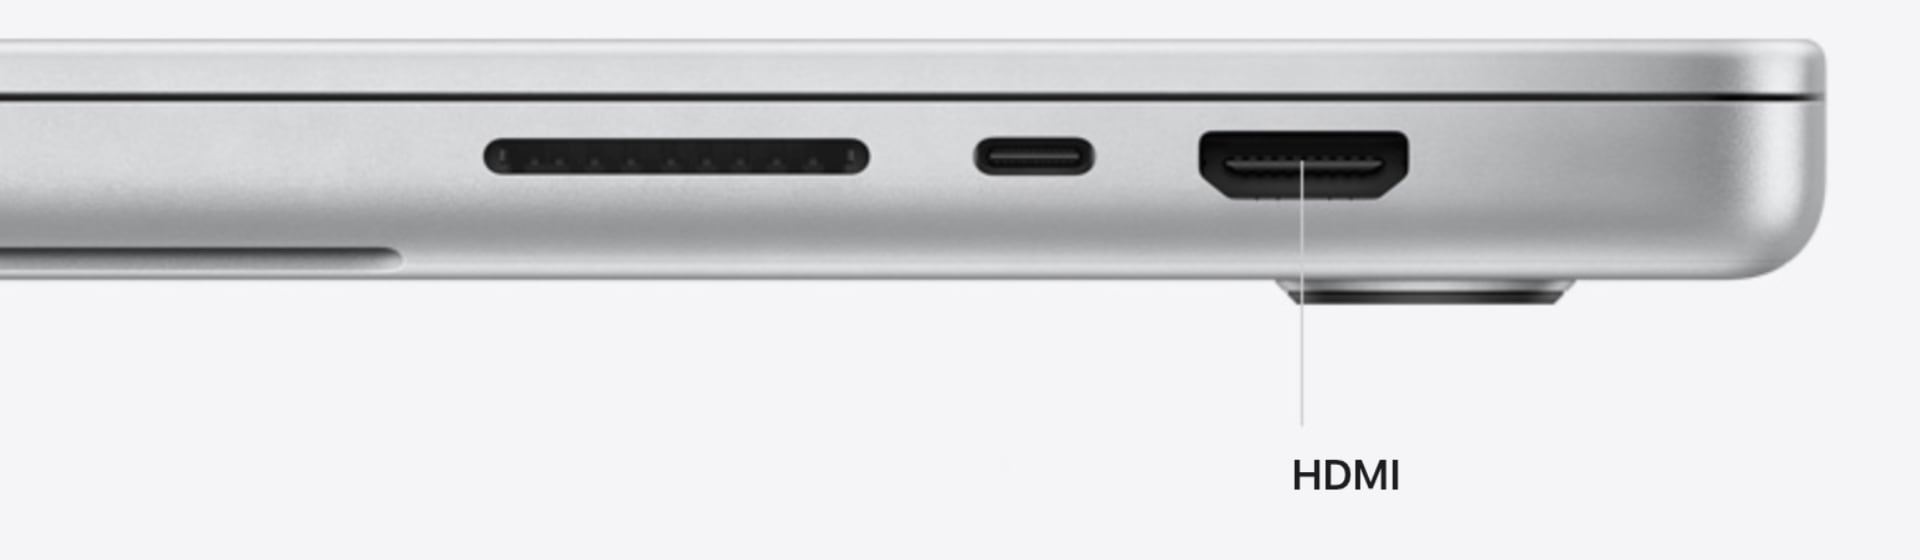 Convierte tu iMac y MacBook en una pantalla Externa [ Adaptador USB con HDMI  Entrada/IN ] - Tumac